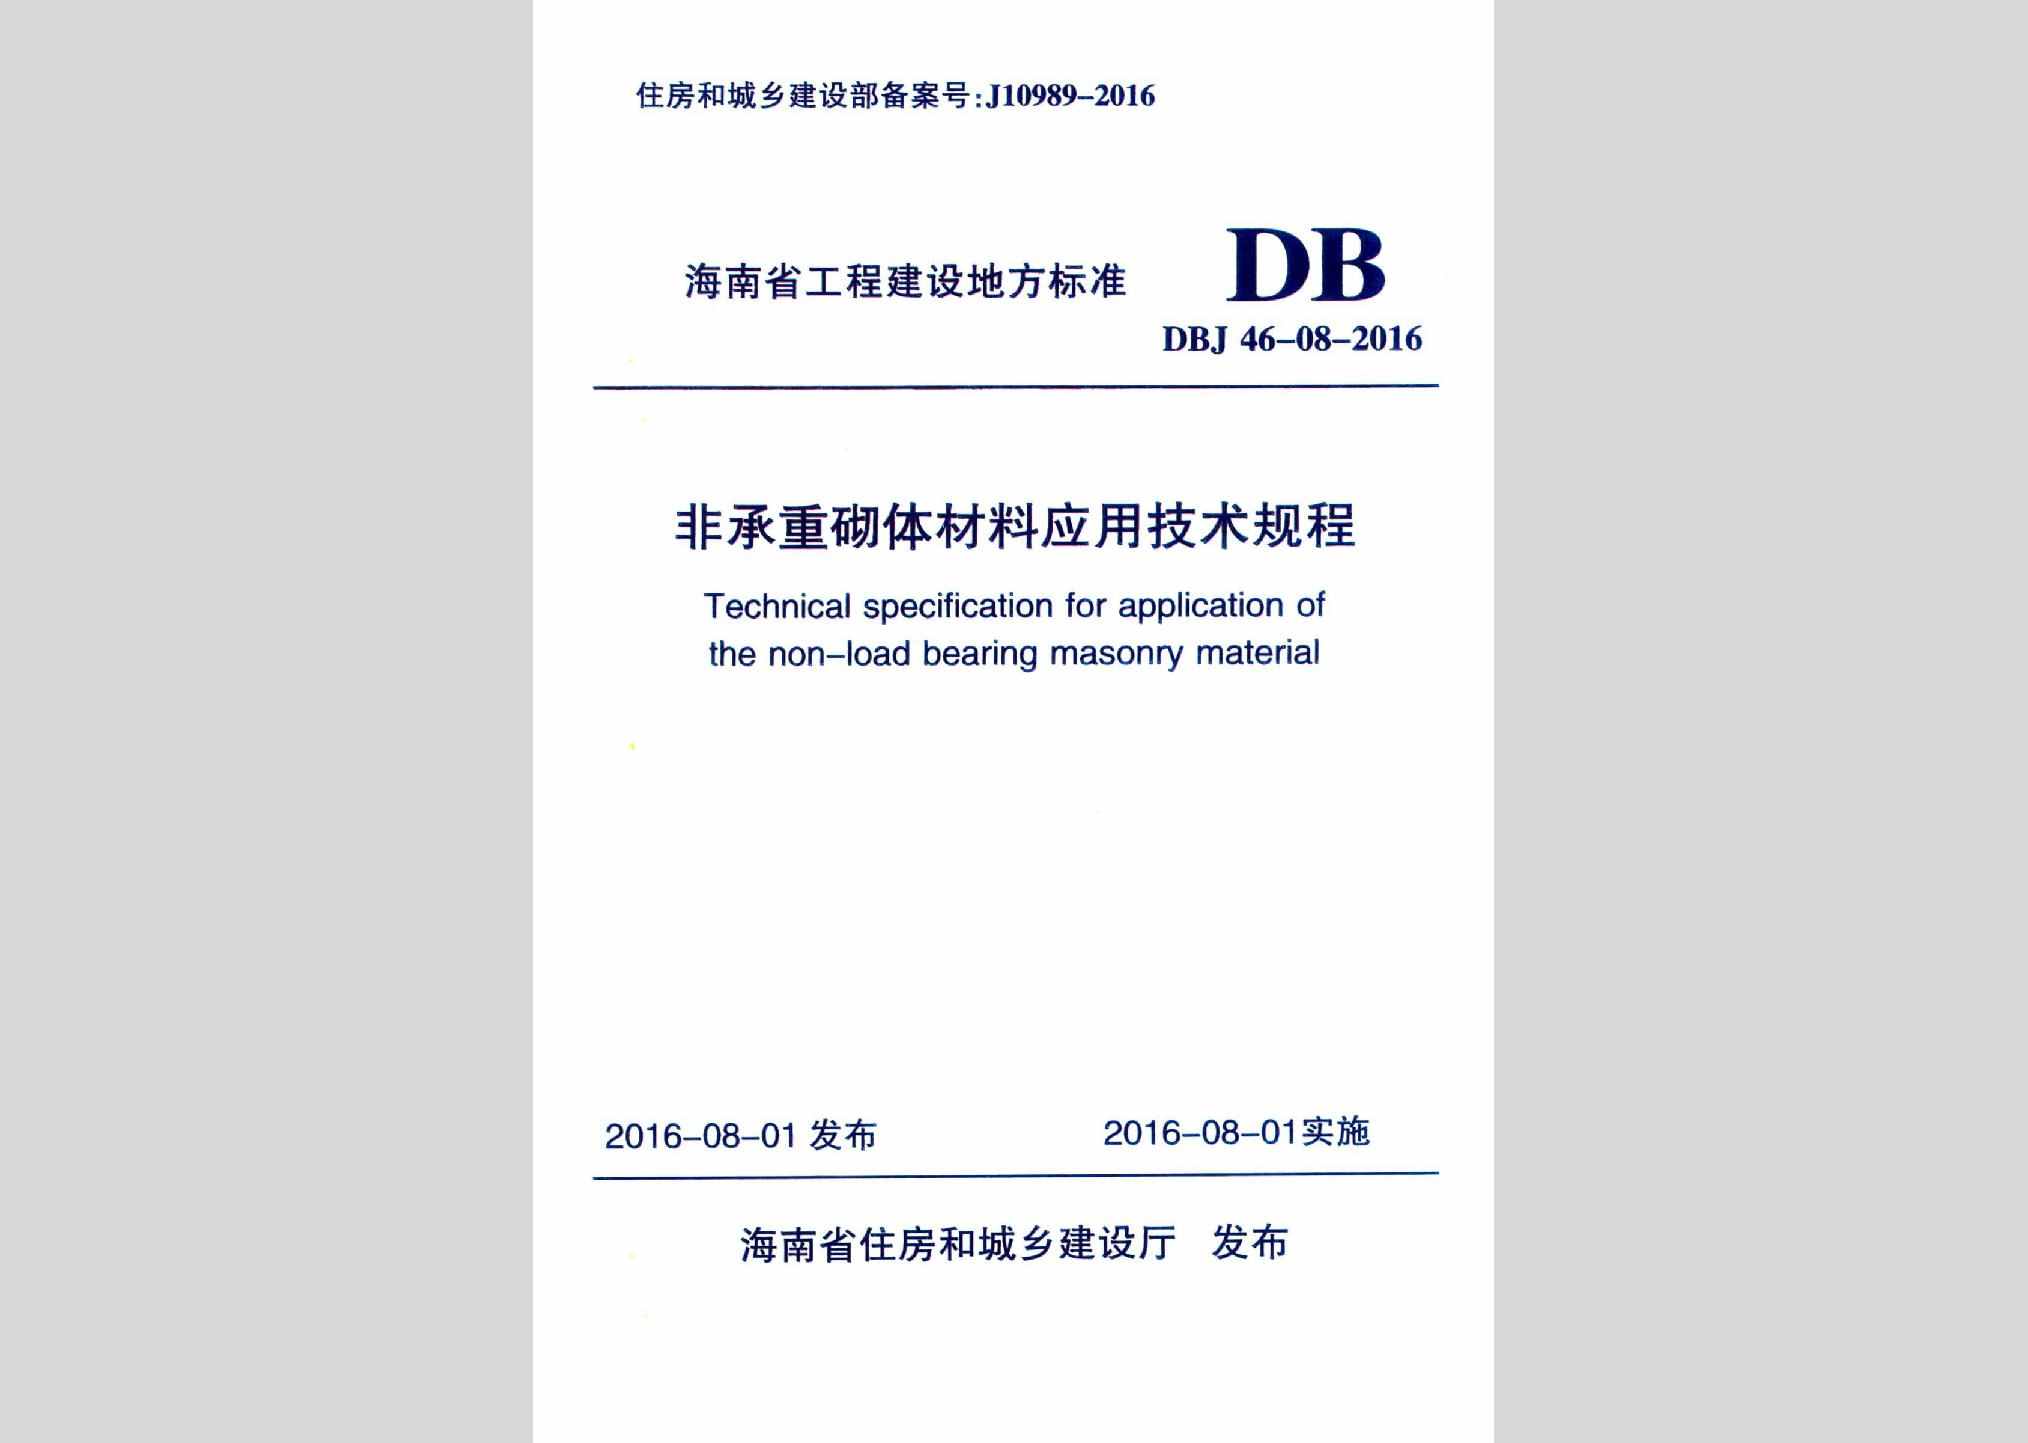 DBJ46-08-2016：非承重砌体材料应用技术规程